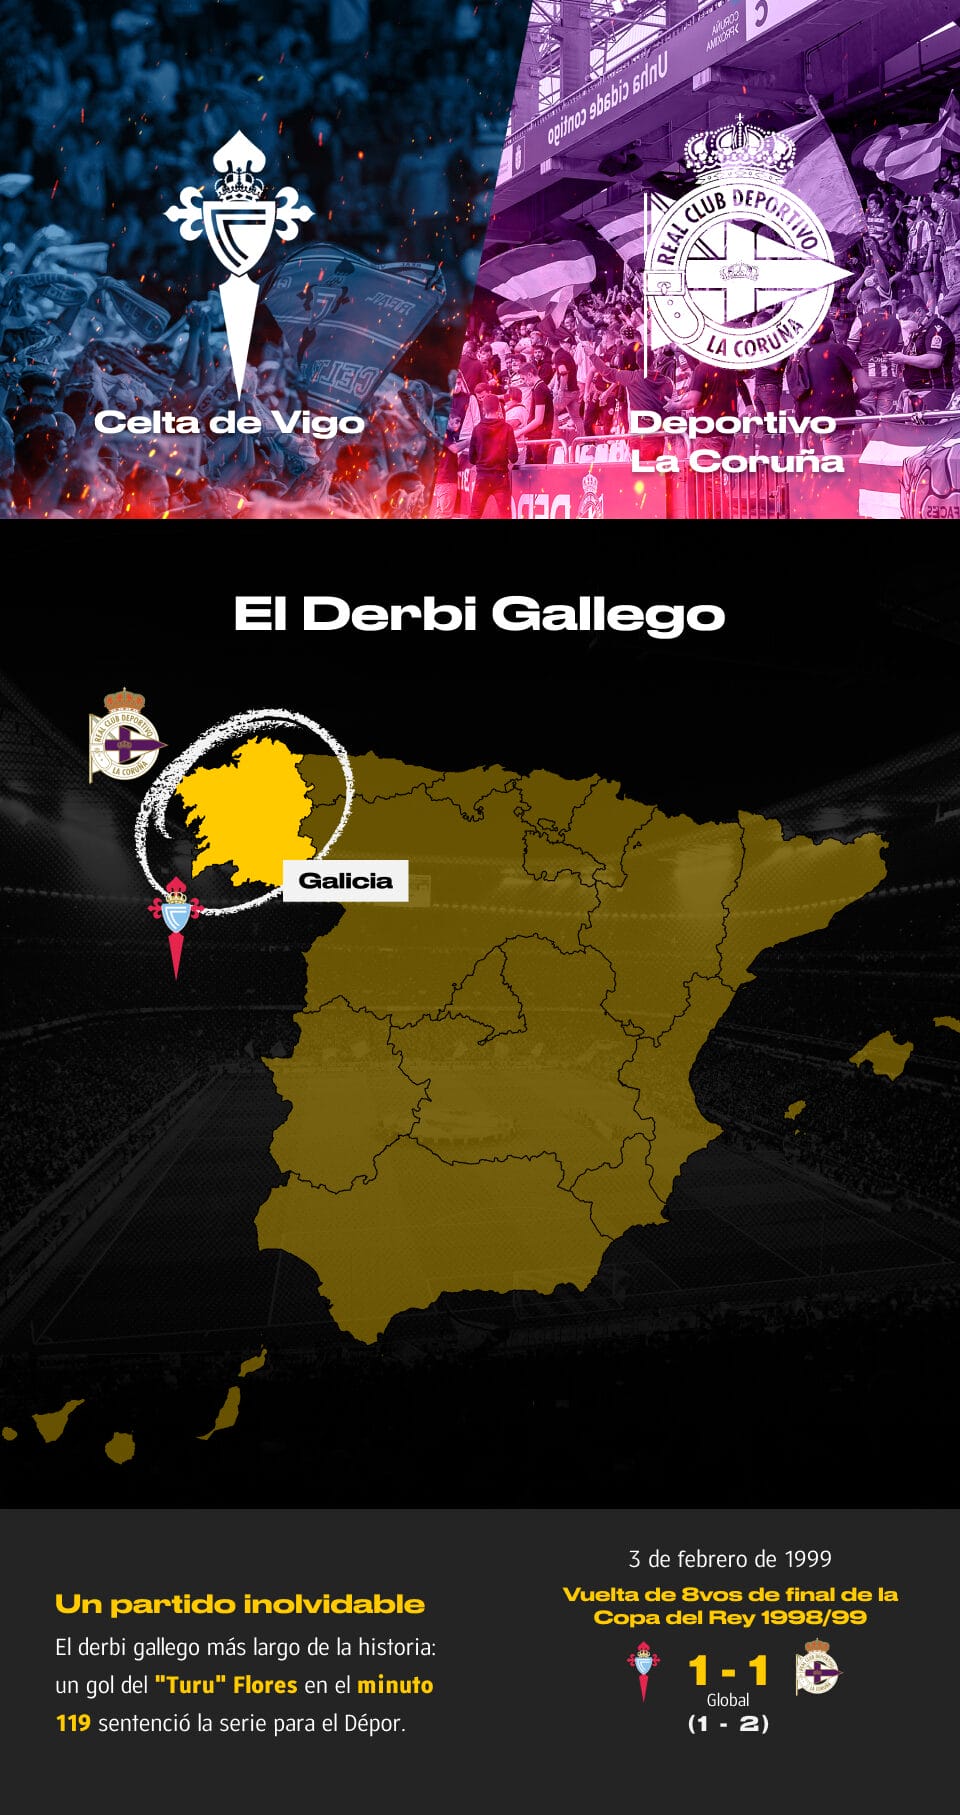 Los 10 derbis más calientes del fútbol español